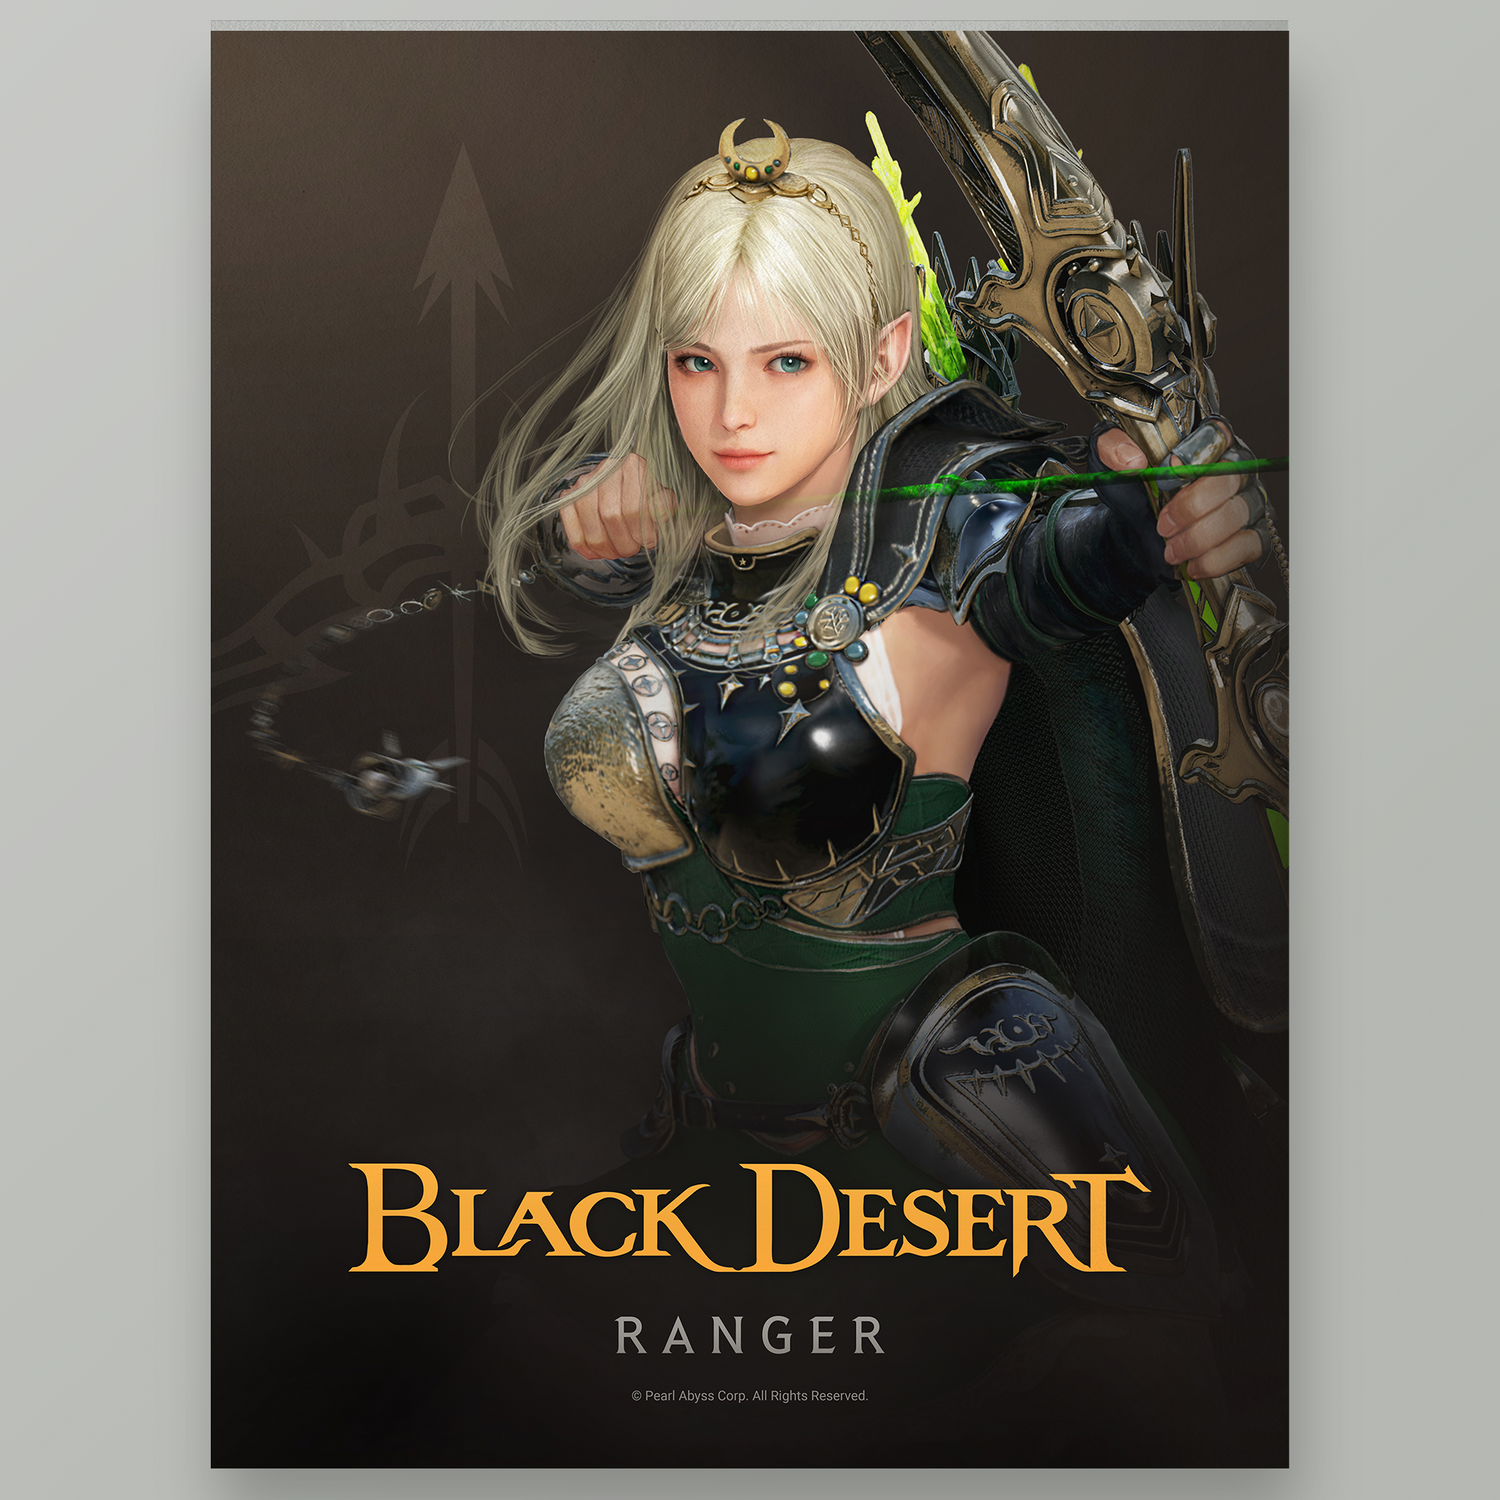 Black Desert Ranger Poster